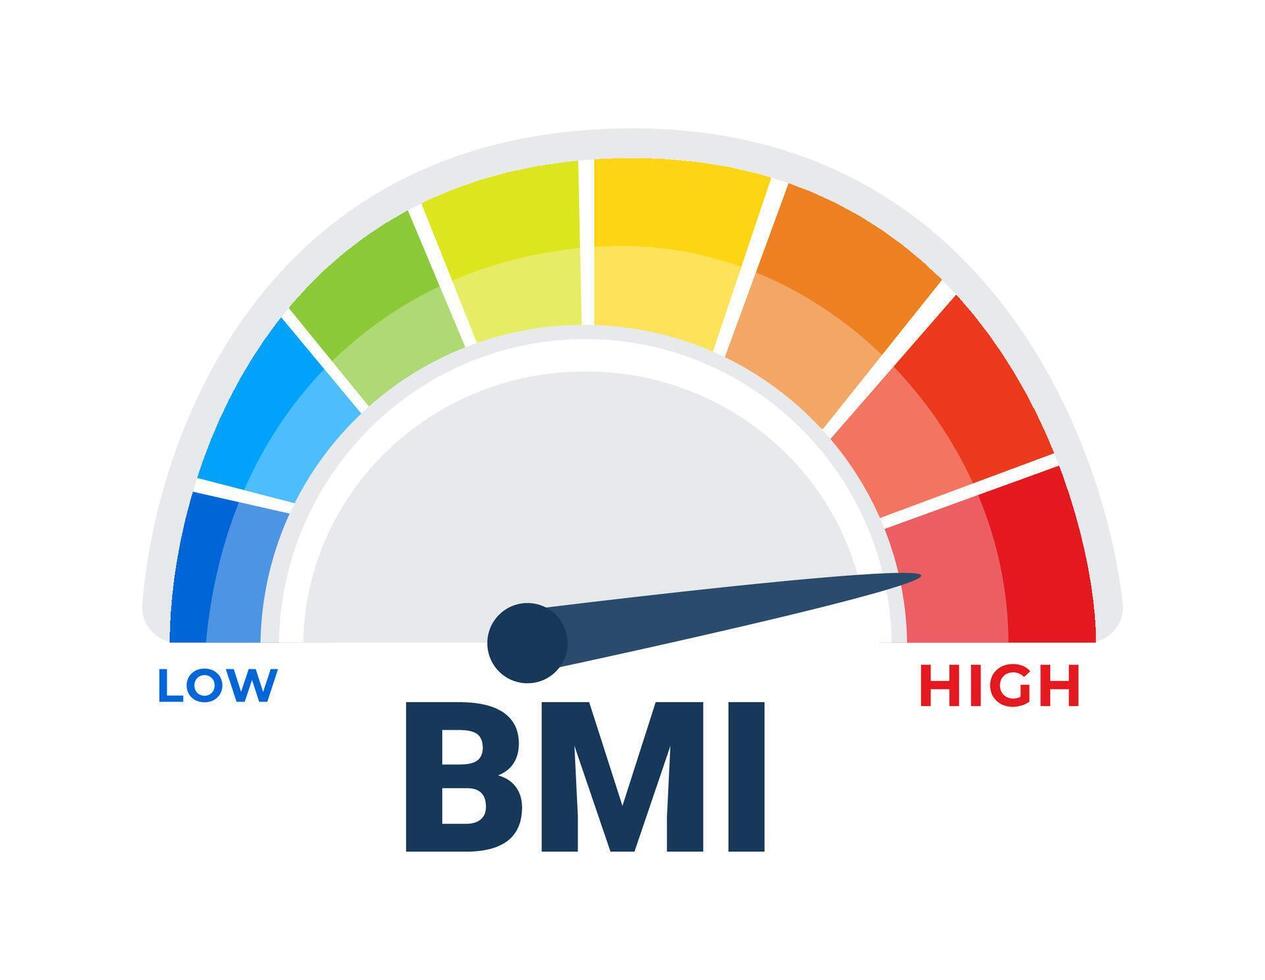 umfassend Körper Masse Index bmi Meter Vektor Illustration Anzeigen Gewicht Kategorien von niedrig zu hoch